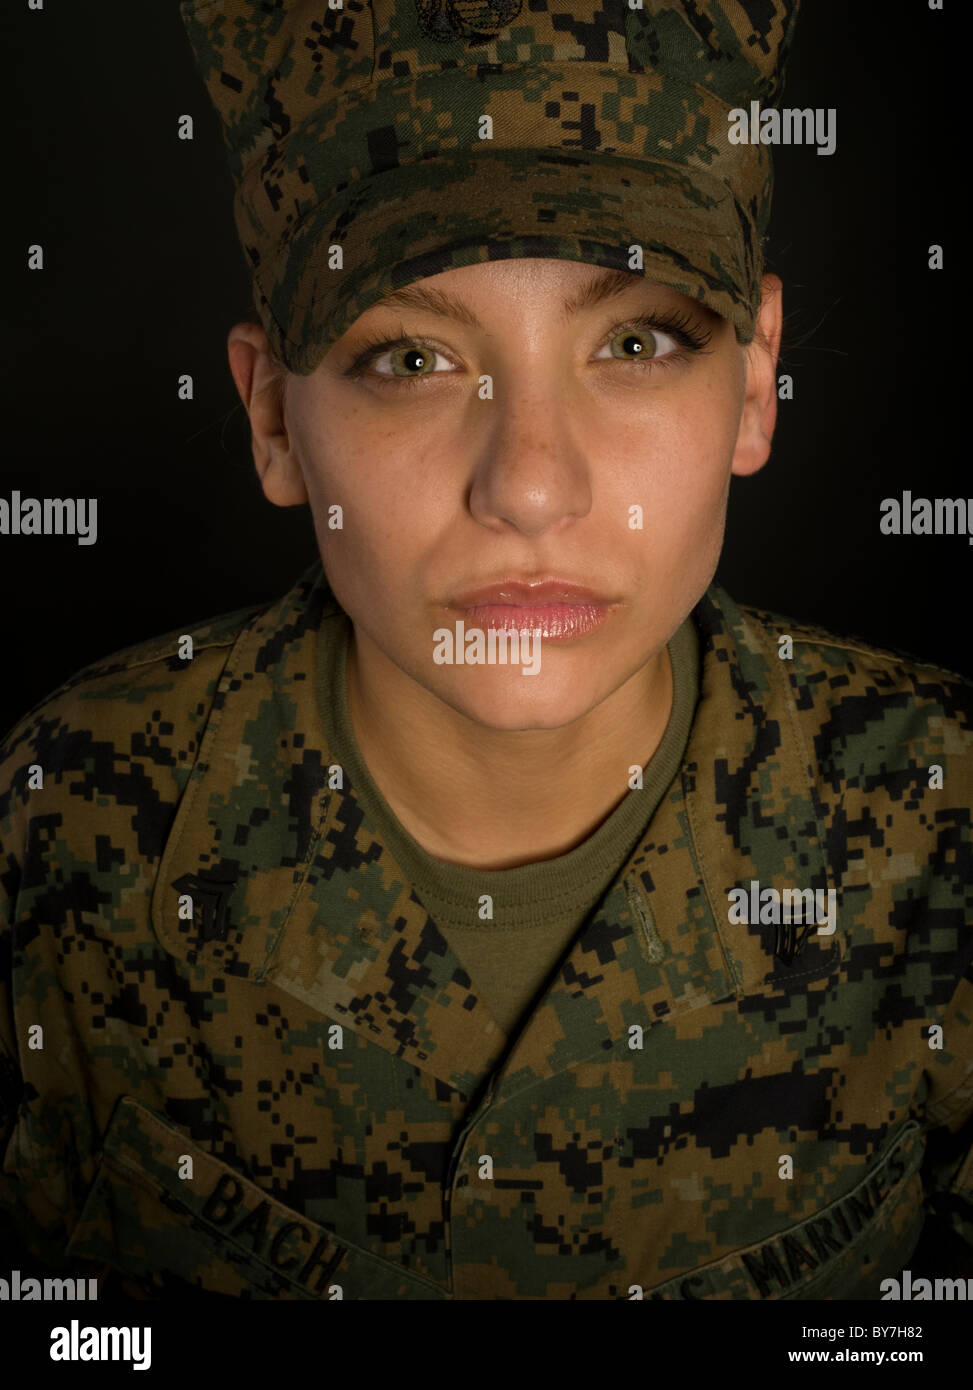 Portrait of Female United States Marine Corps Marine in Marine Corps Combat Utility Uniform Stock Photo